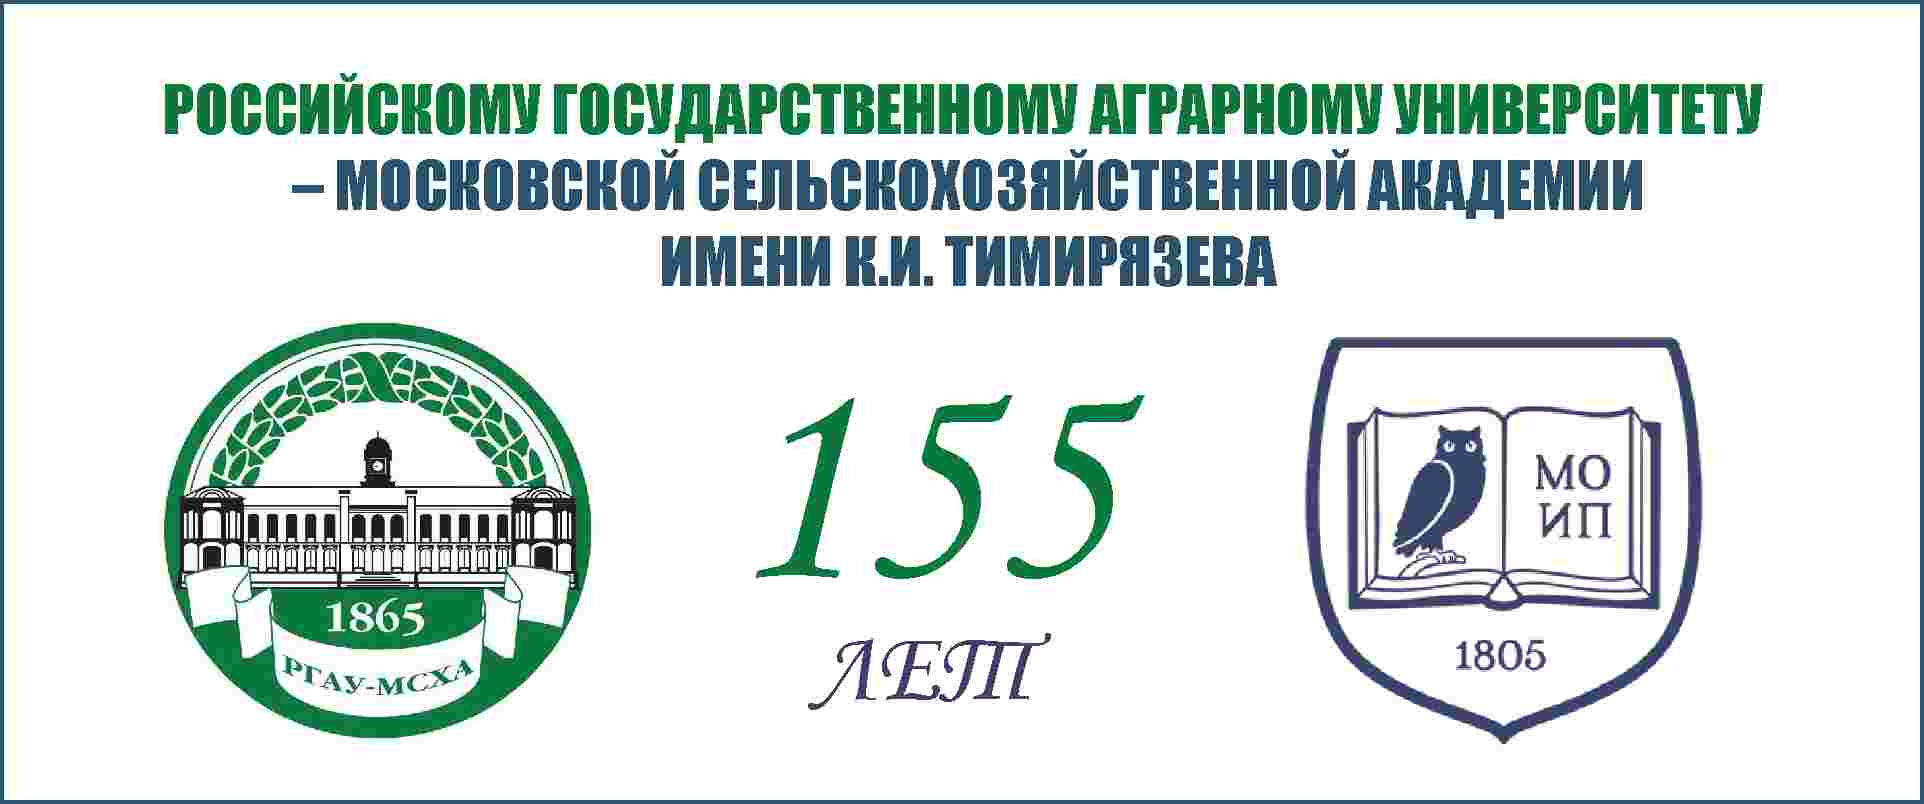 Московской сельскохозяйственной академии имени К.А.Тимирязева - 155 лет